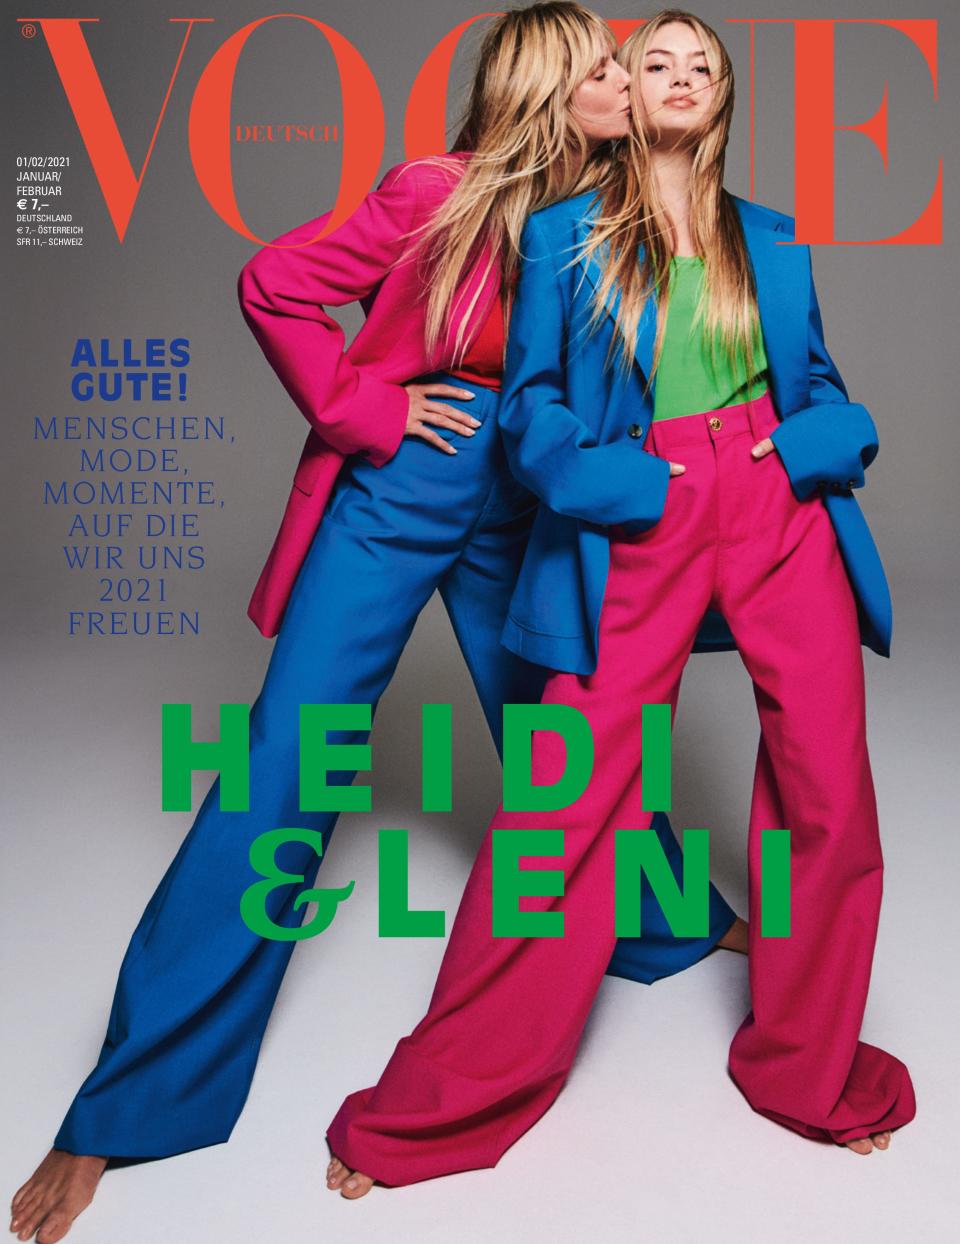 Leni Klum makes her modeling debut alongside her mother Heidi Klum on the January/February 2021 cover of Vogue Germany.